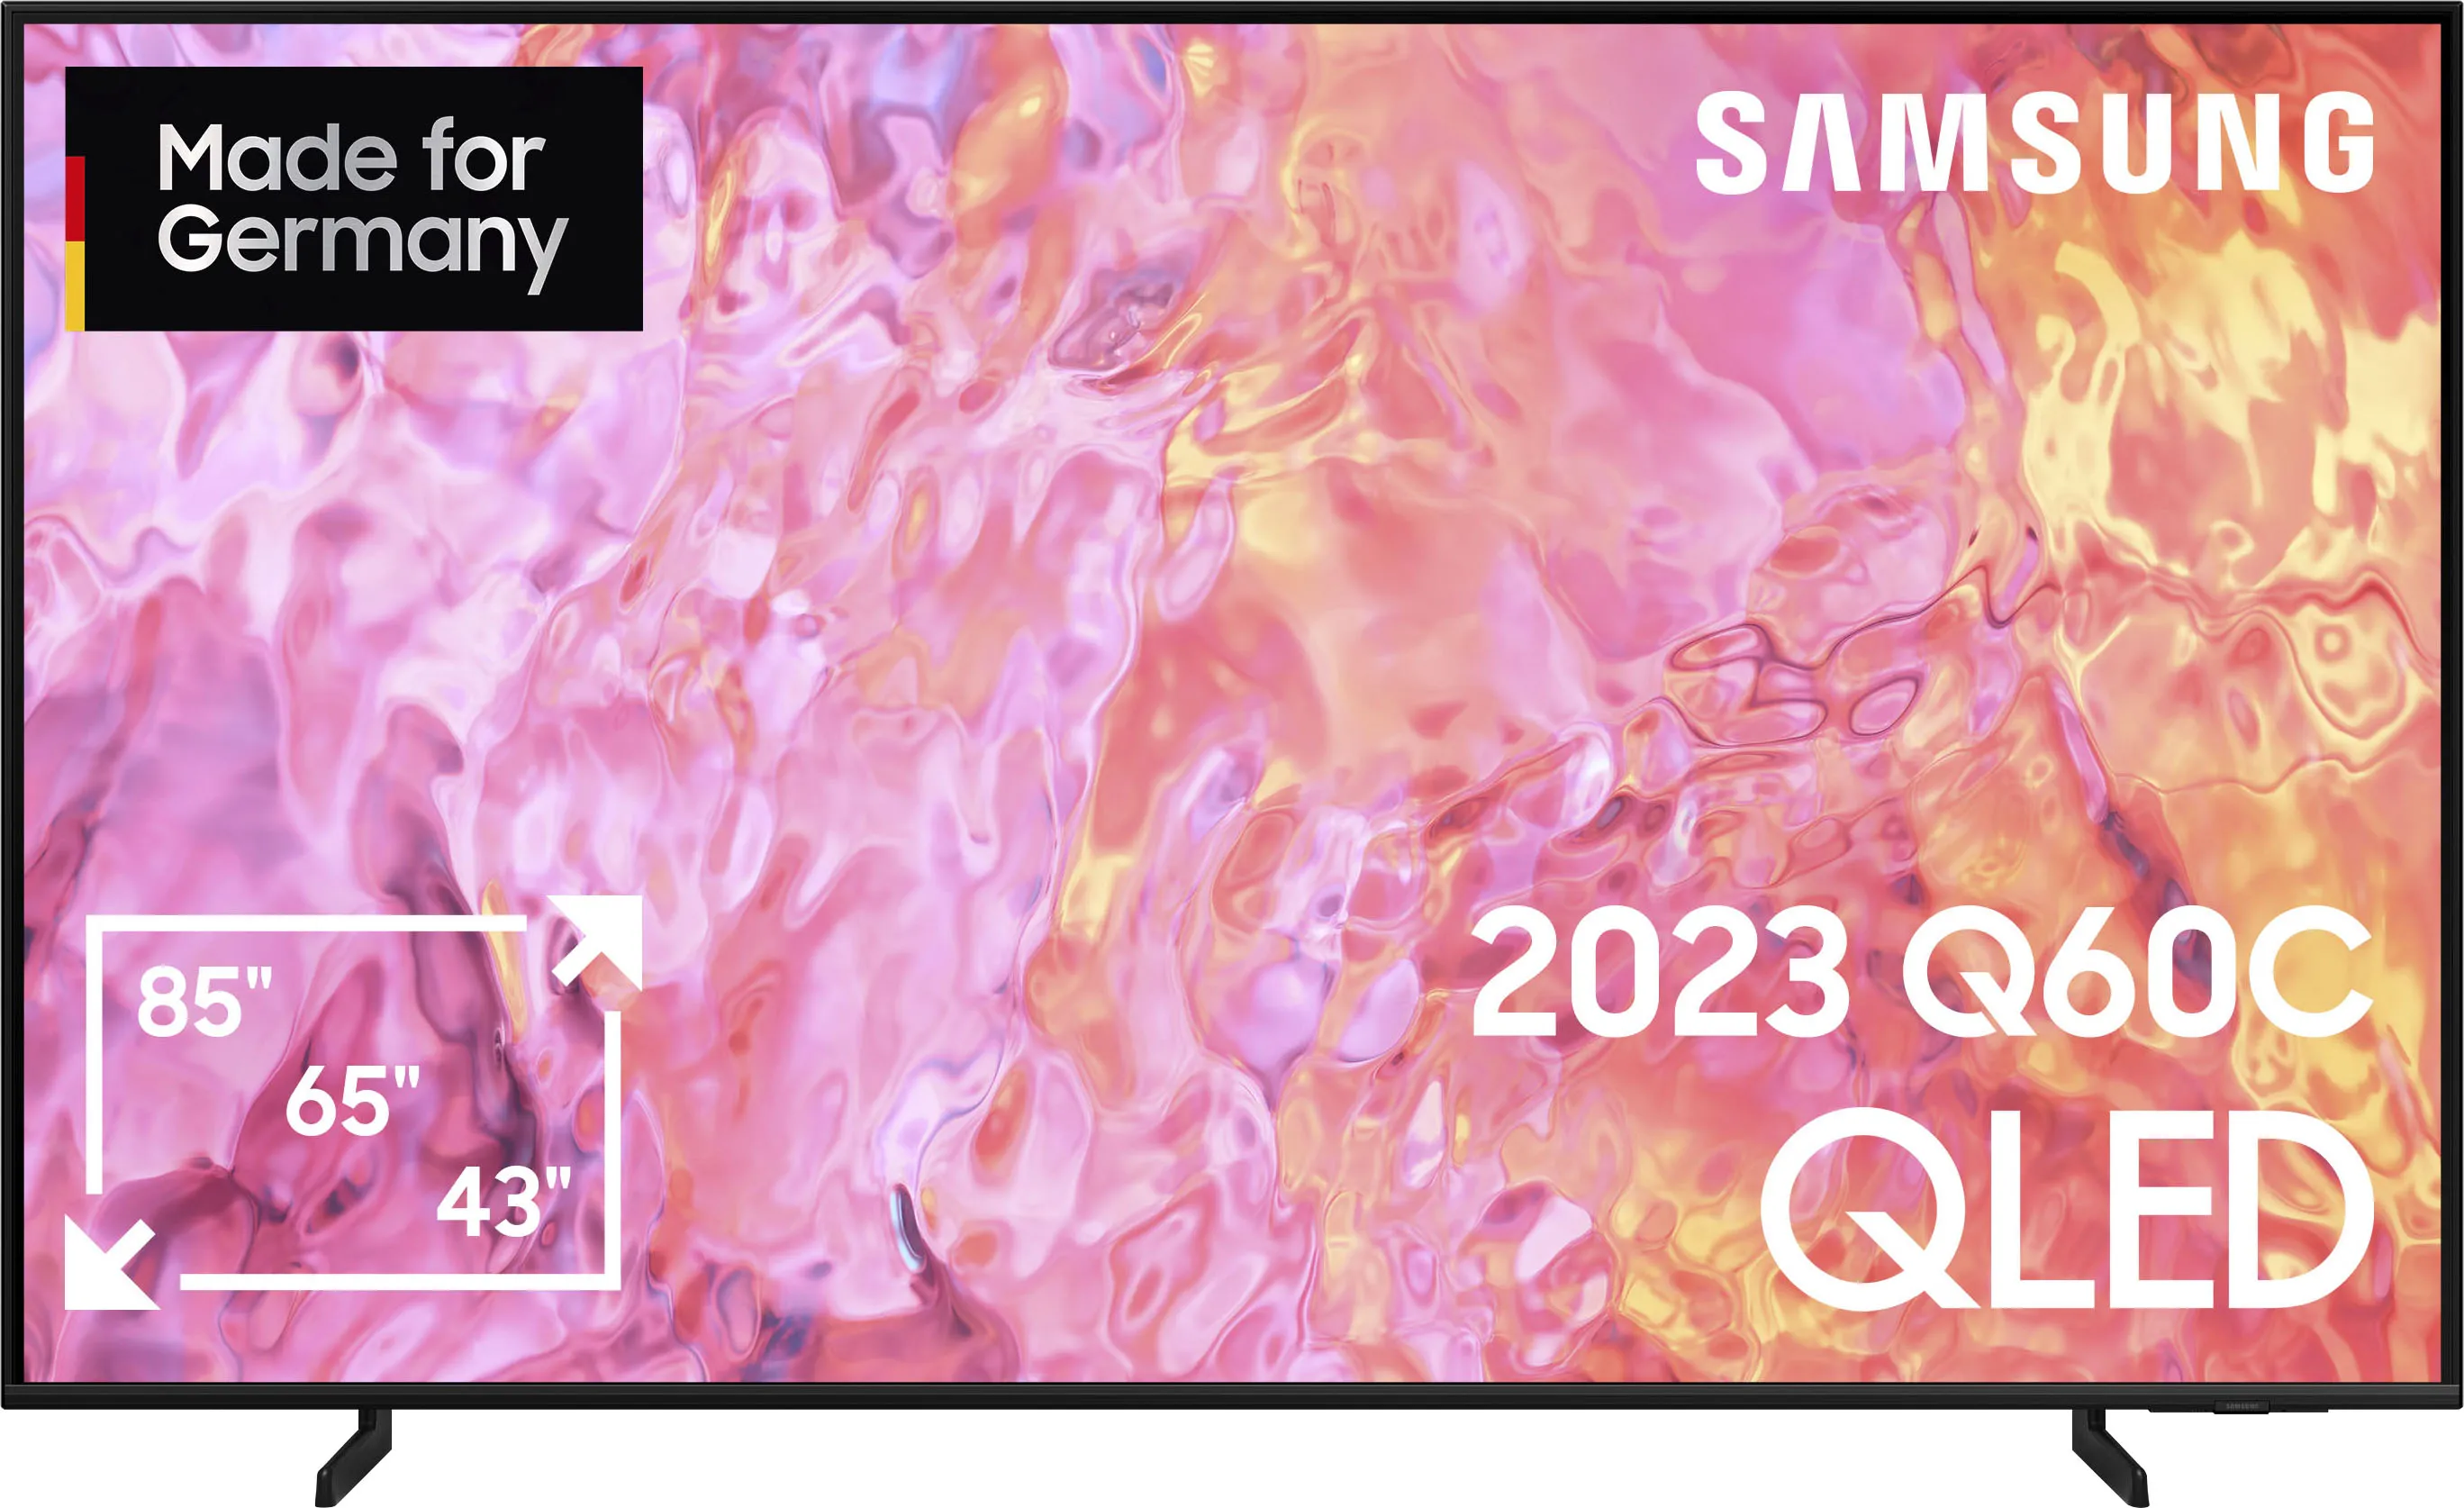 F (A bis G) SAMSUNG QLED-Fernseher Fernseher 100% Farbvolumen mit Quantum Dots,Quantum HDR,AirSlim,Gaming Hub schwarz (eh13 1hts) LED Fernseher Bestseller